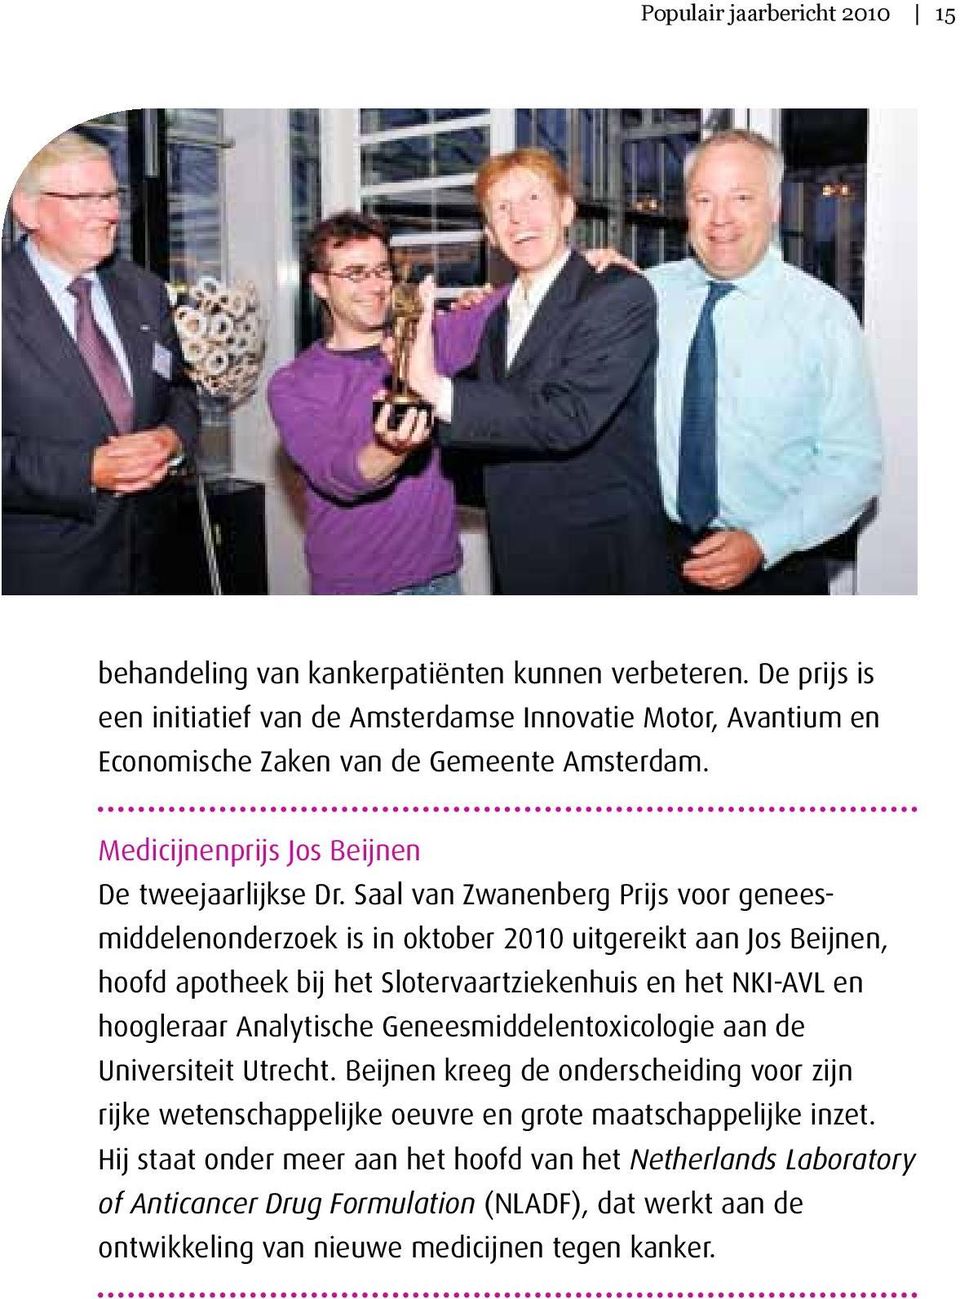 Saal van Zwanenberg Prijs voor geneesmiddelen onderzoek is in oktober 2010 uitgereikt aan Jos Beijnen, hoofd apotheek bij het Slotervaartziekenhuis en het NKI-AVL en hoogleraar Analytische